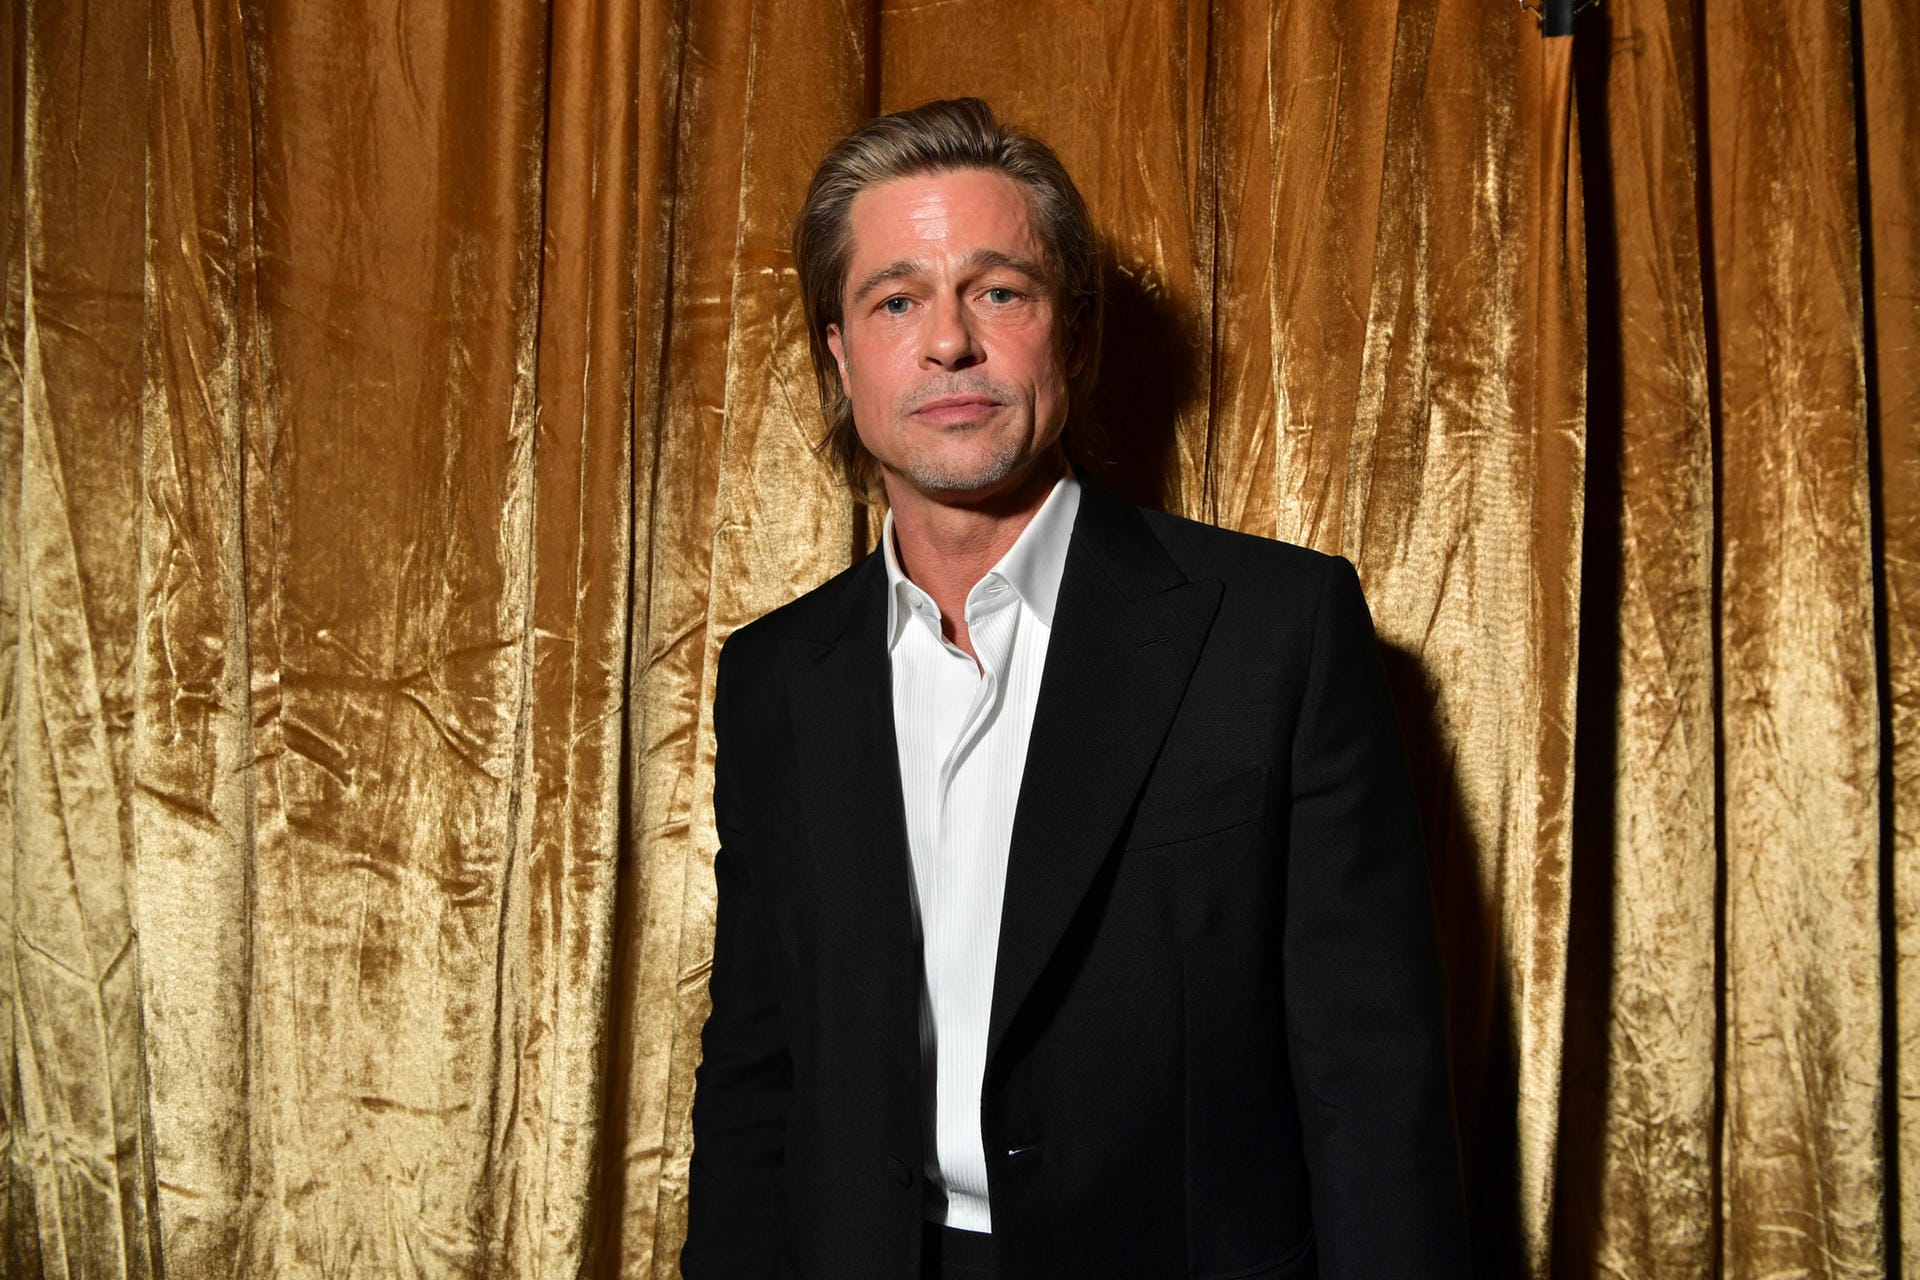 Bei einer Filmpremiere in Los Angeles schlug ein Stalker dem Schauspieler Brad Pitt unvermittelt ins Gesicht. Es folgte die sofortige Verhaftung und 20 Tage gemeinnützige Arbeit als Strafe.